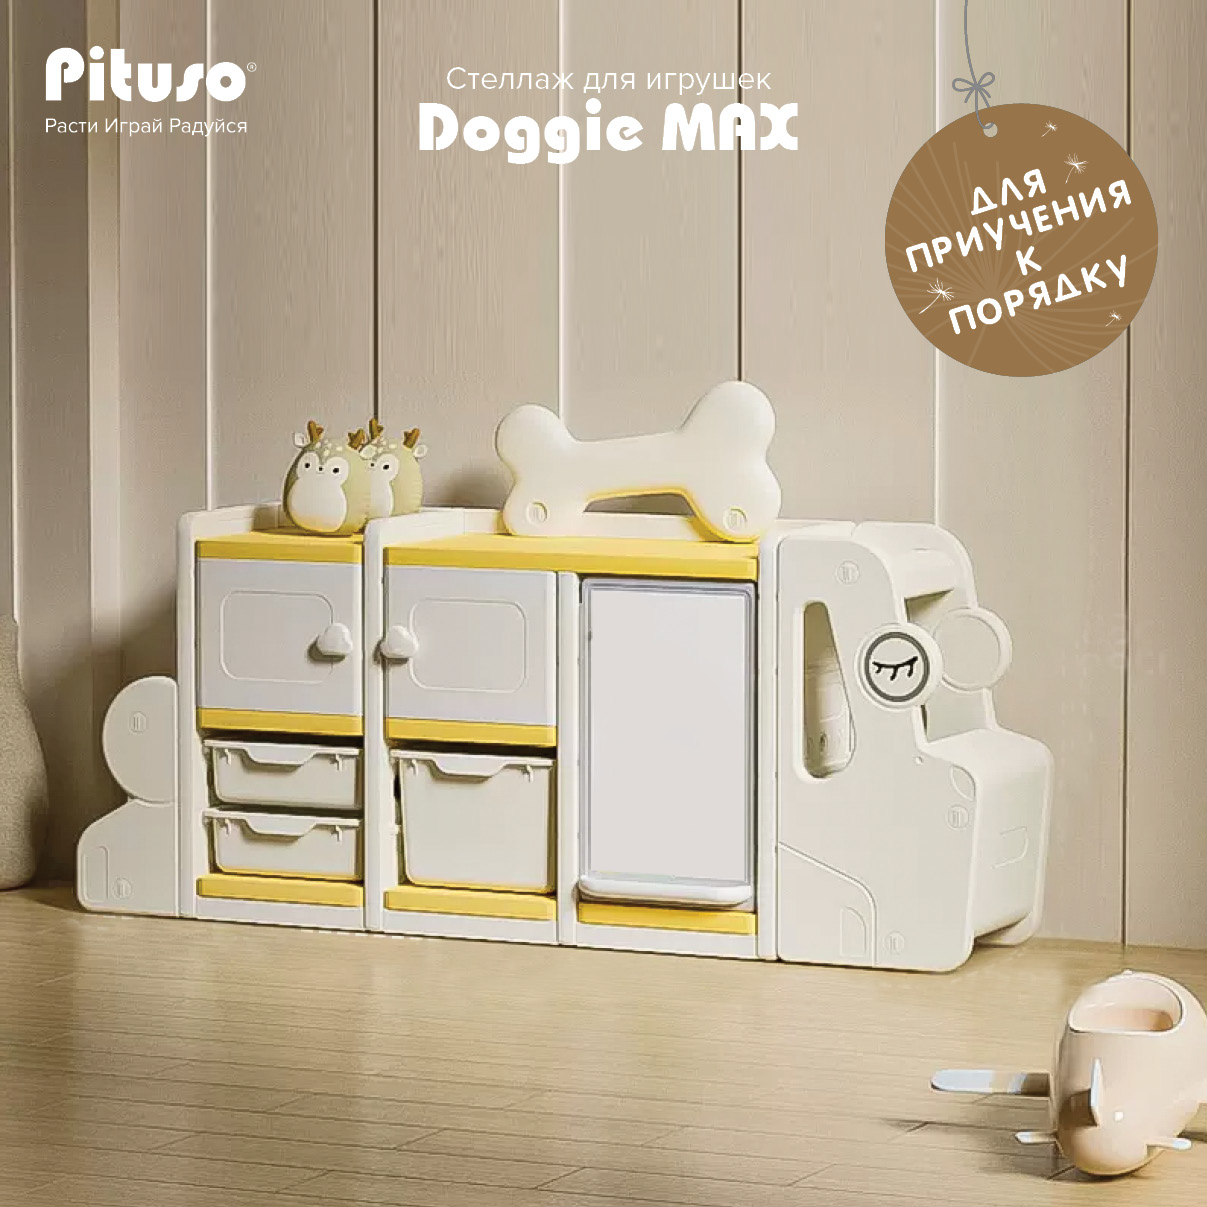 Стеллаж для игрушек с ящиками Pituso Doggie Max, доска для рисования, бежевый, желтый доска для рисования для малышей